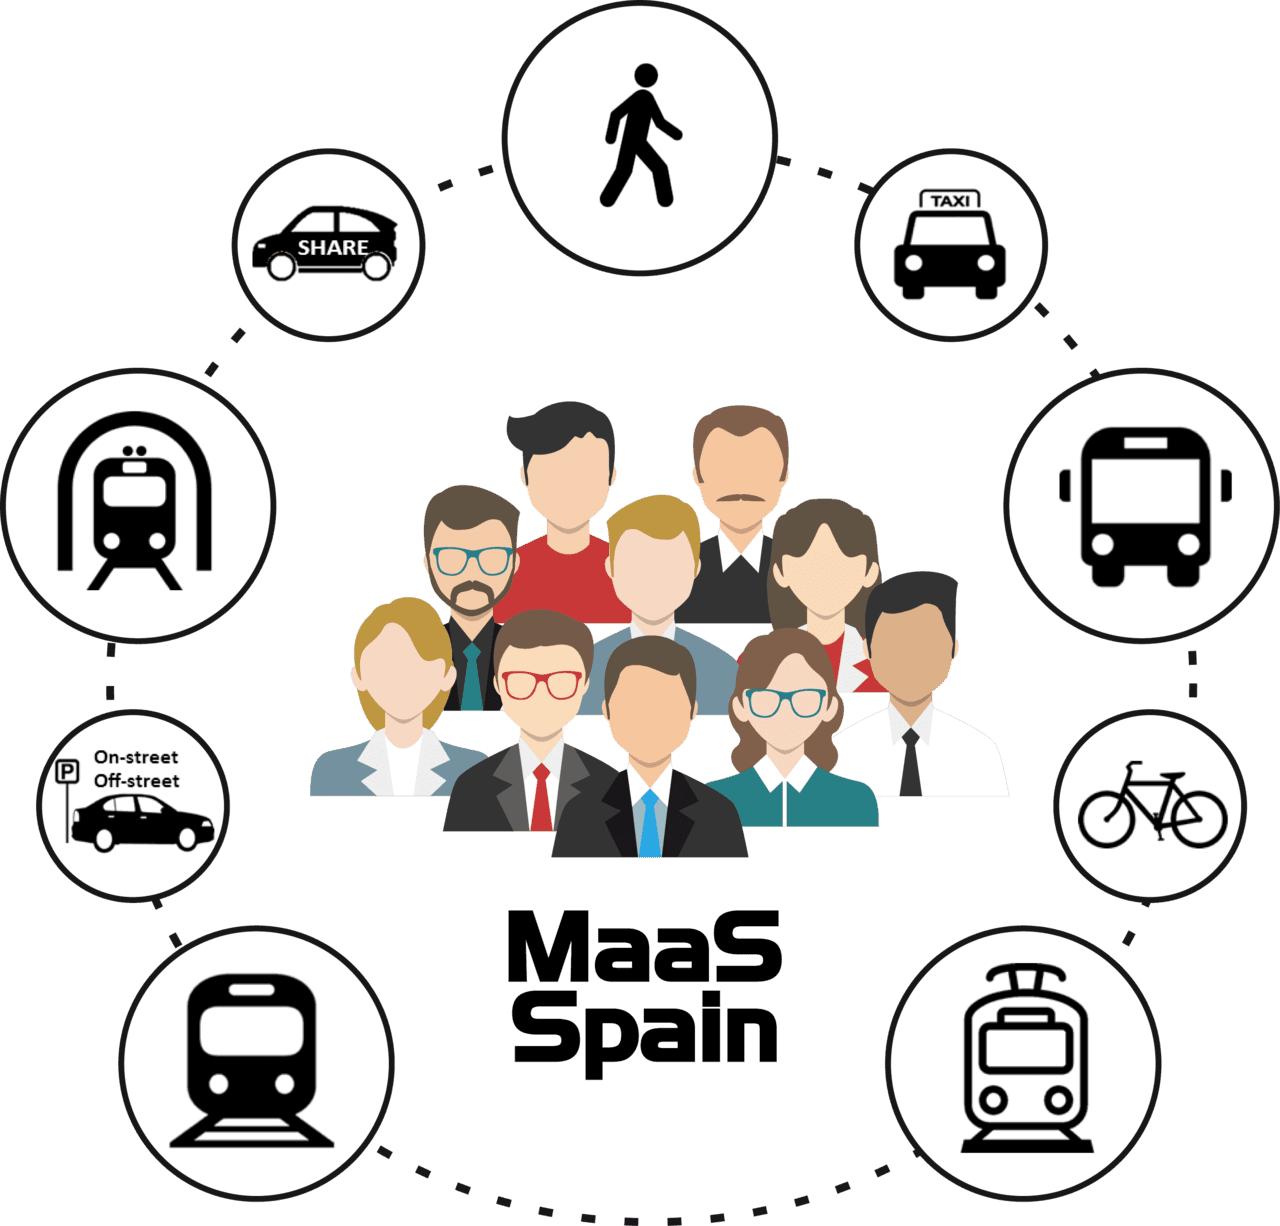 MaaS Spain - Asociación Española de Movilidad como Servicio. Madrid, 11 de julio de 2018 - 12.00 horas